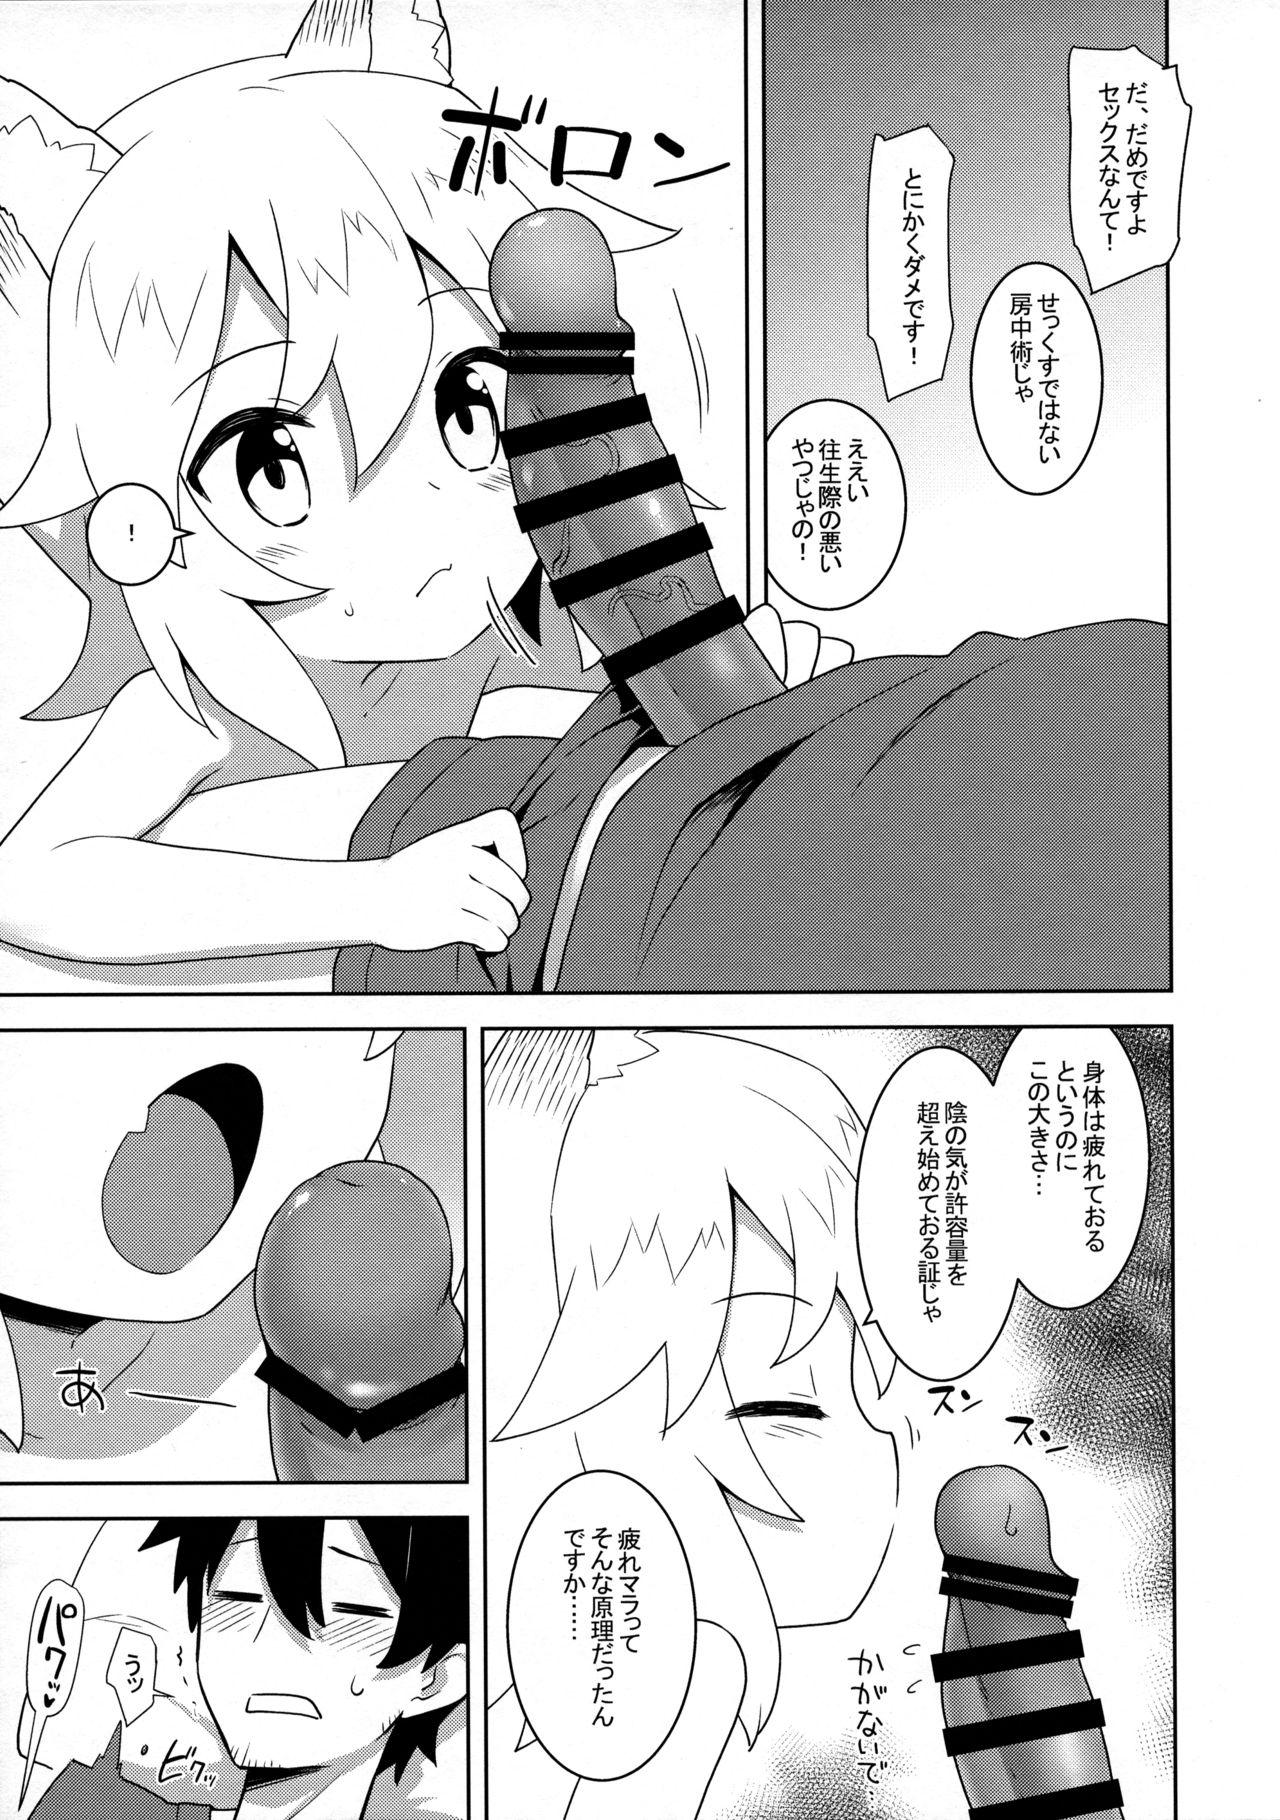 Plug Senko-san, Yobai Suru. - Sewayaki kitsune no senko-san Mofos - Page 3